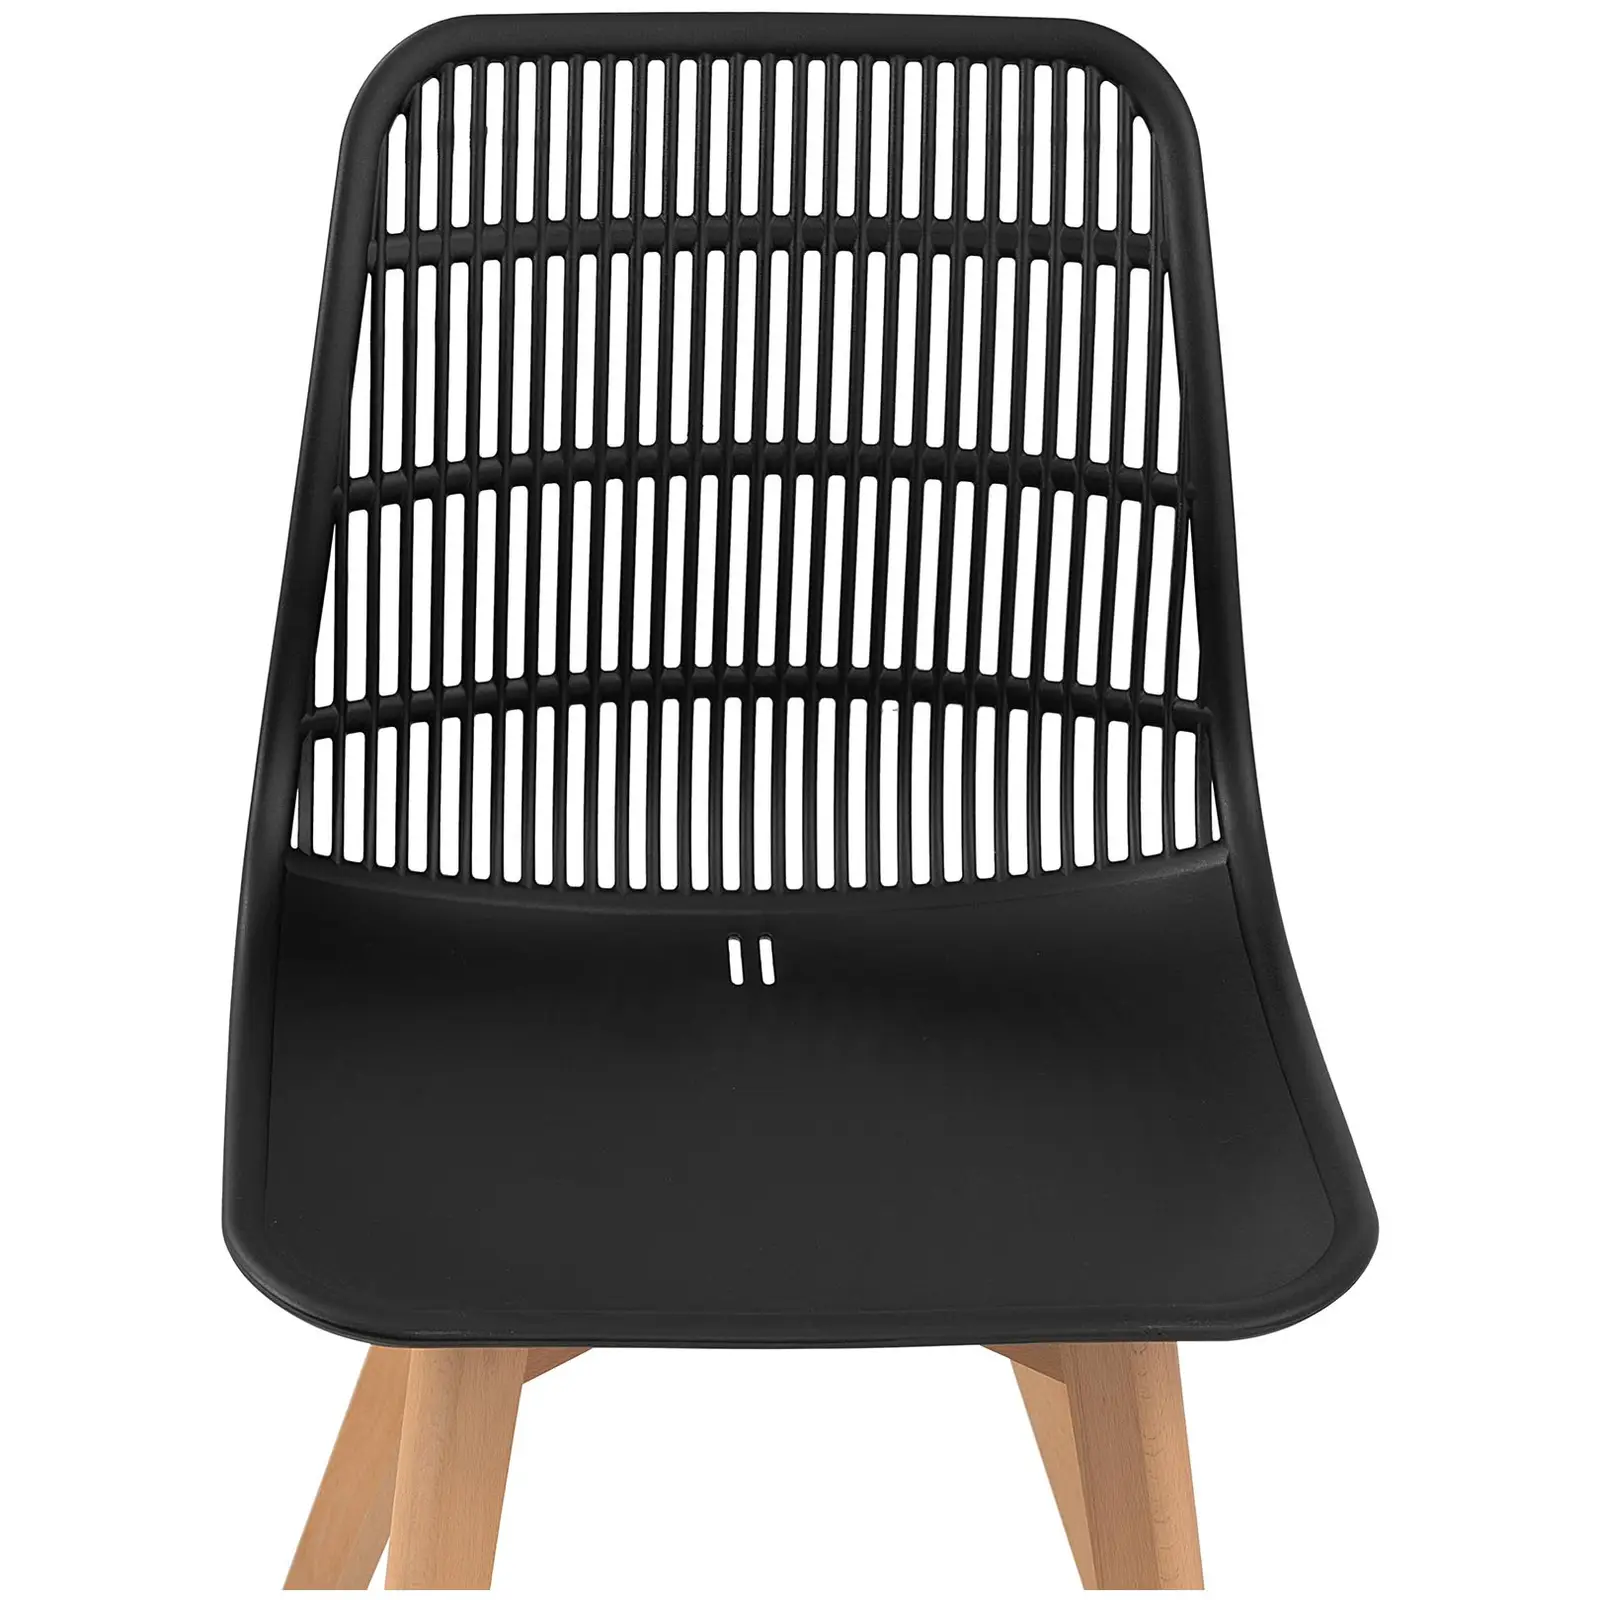 Chaise - Lot de 2 - 150 kg max. - Surface d'assise de 460 x 460 x 450 mm - Coloris noir